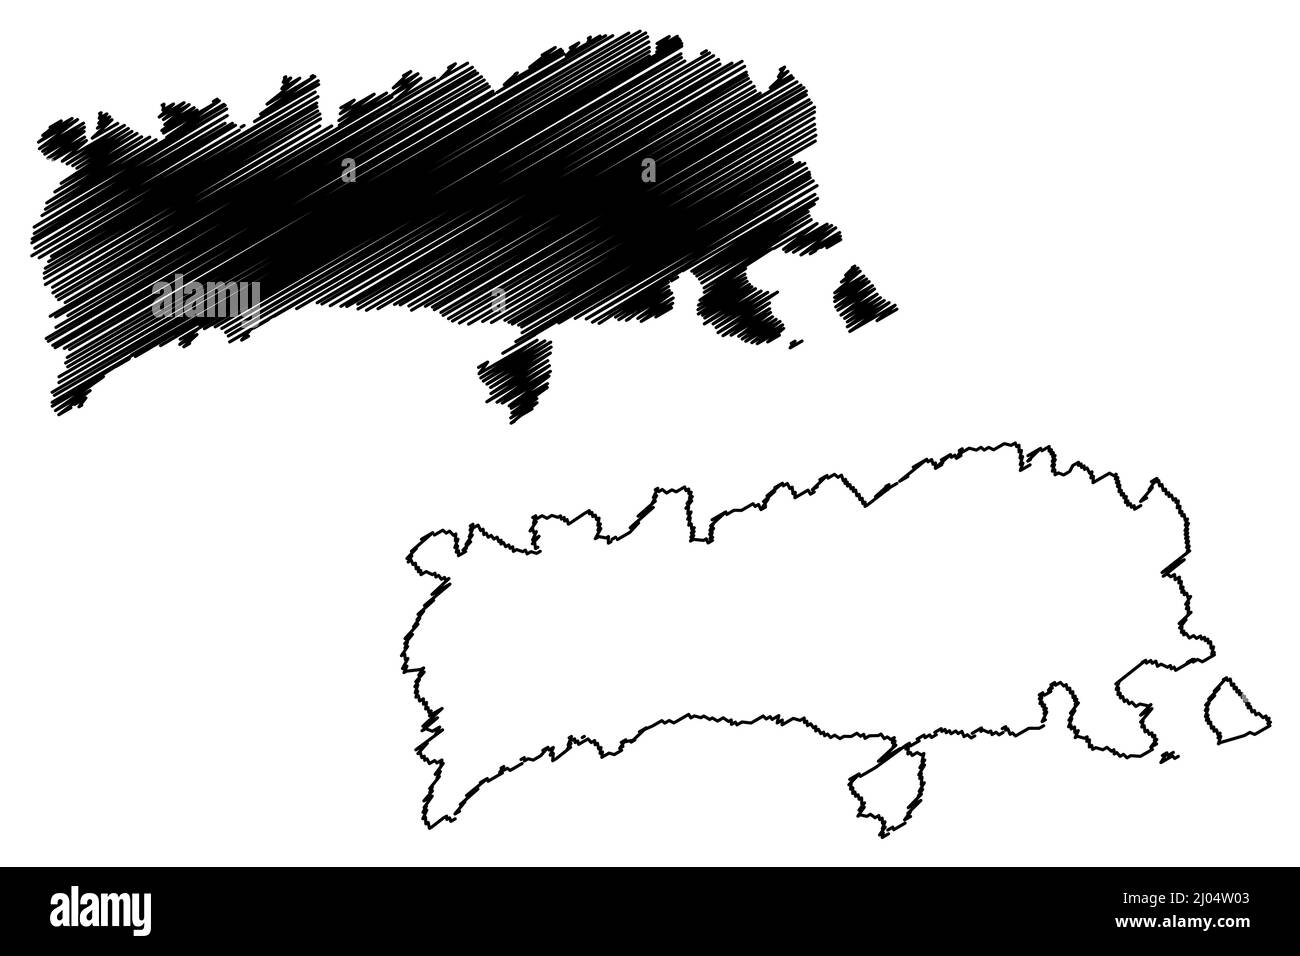 Île de Halki (République hellénique, Grèce, île grecque, archipel du Dodécanèse) carte illustration vectorielle, croquis griffés carte Chalce ou Chalki Illustration de Vecteur